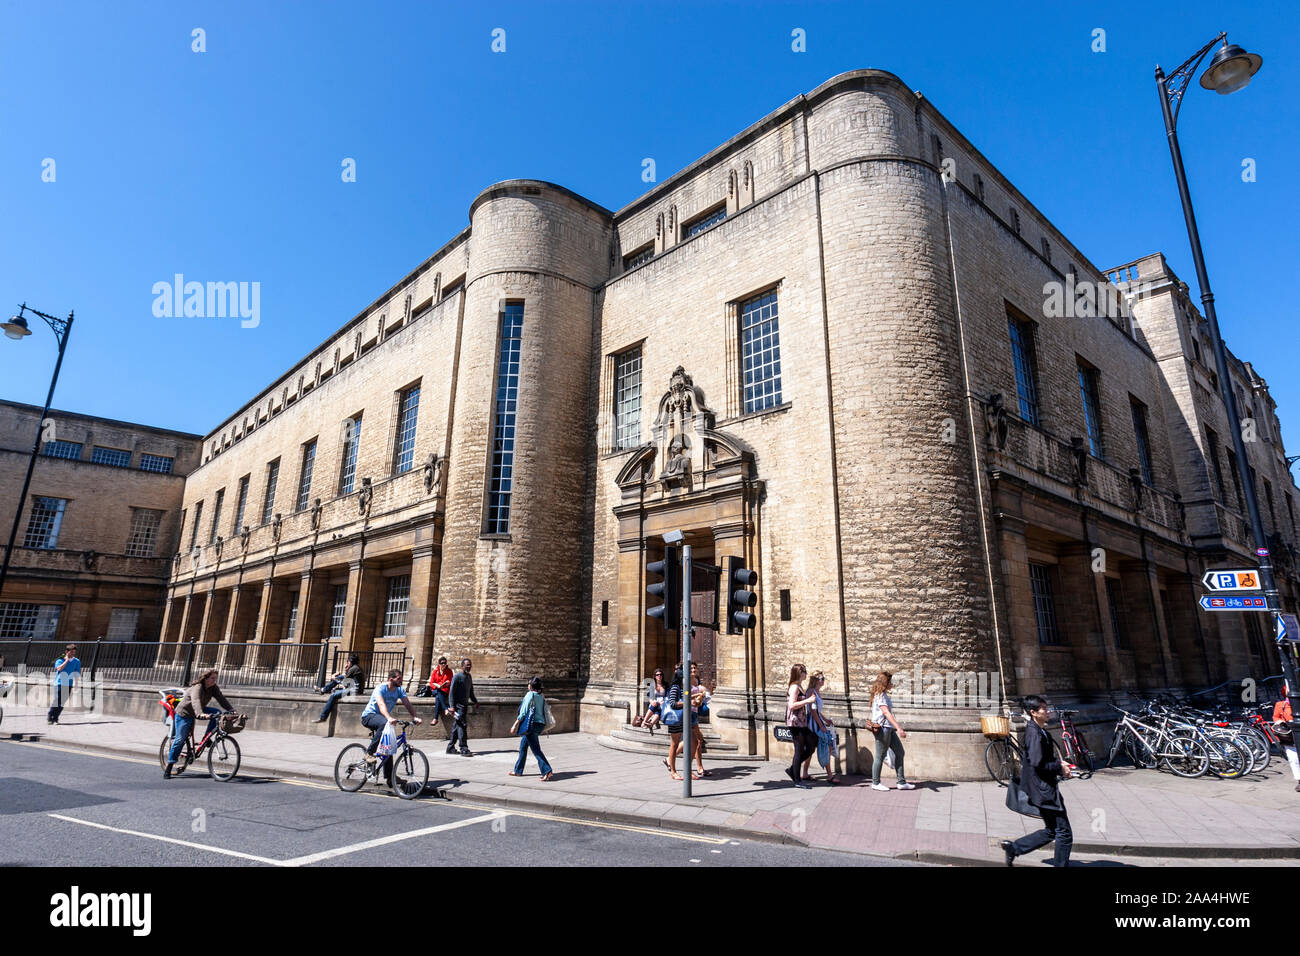 Weston bibliothèque fait partie de la Bodleian Library, la principale bibliothèque de recherche de l'Université d'Oxford, Oxfordshire, England, UK Banque D'Images